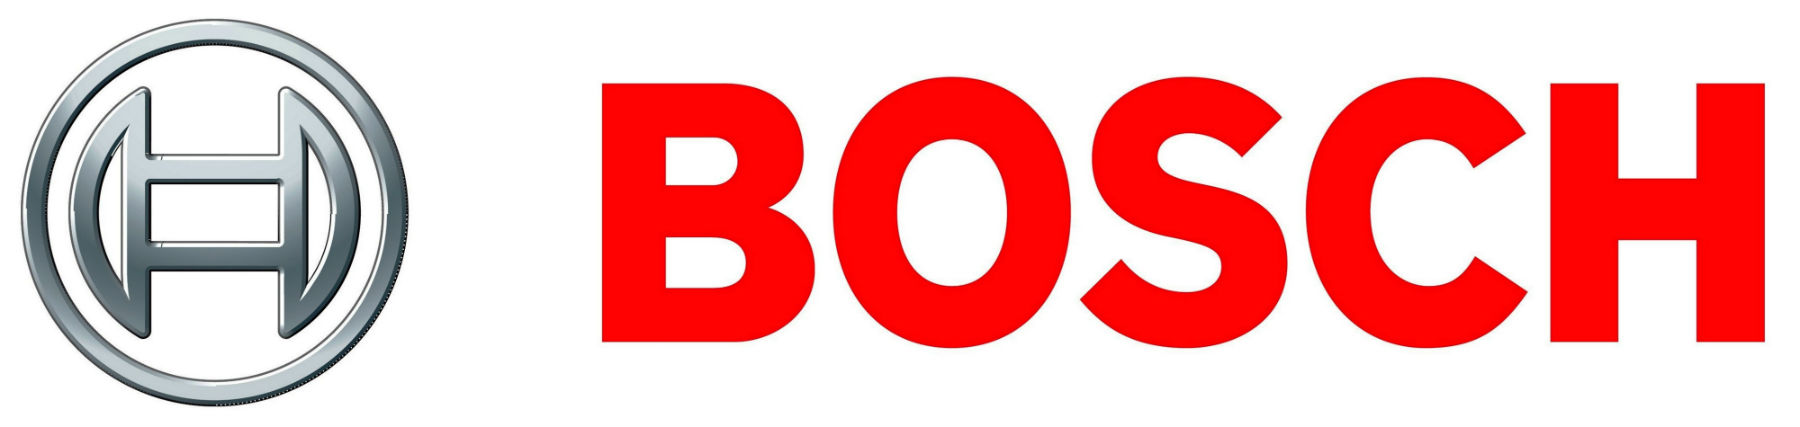 Bosch_logo-2[1]